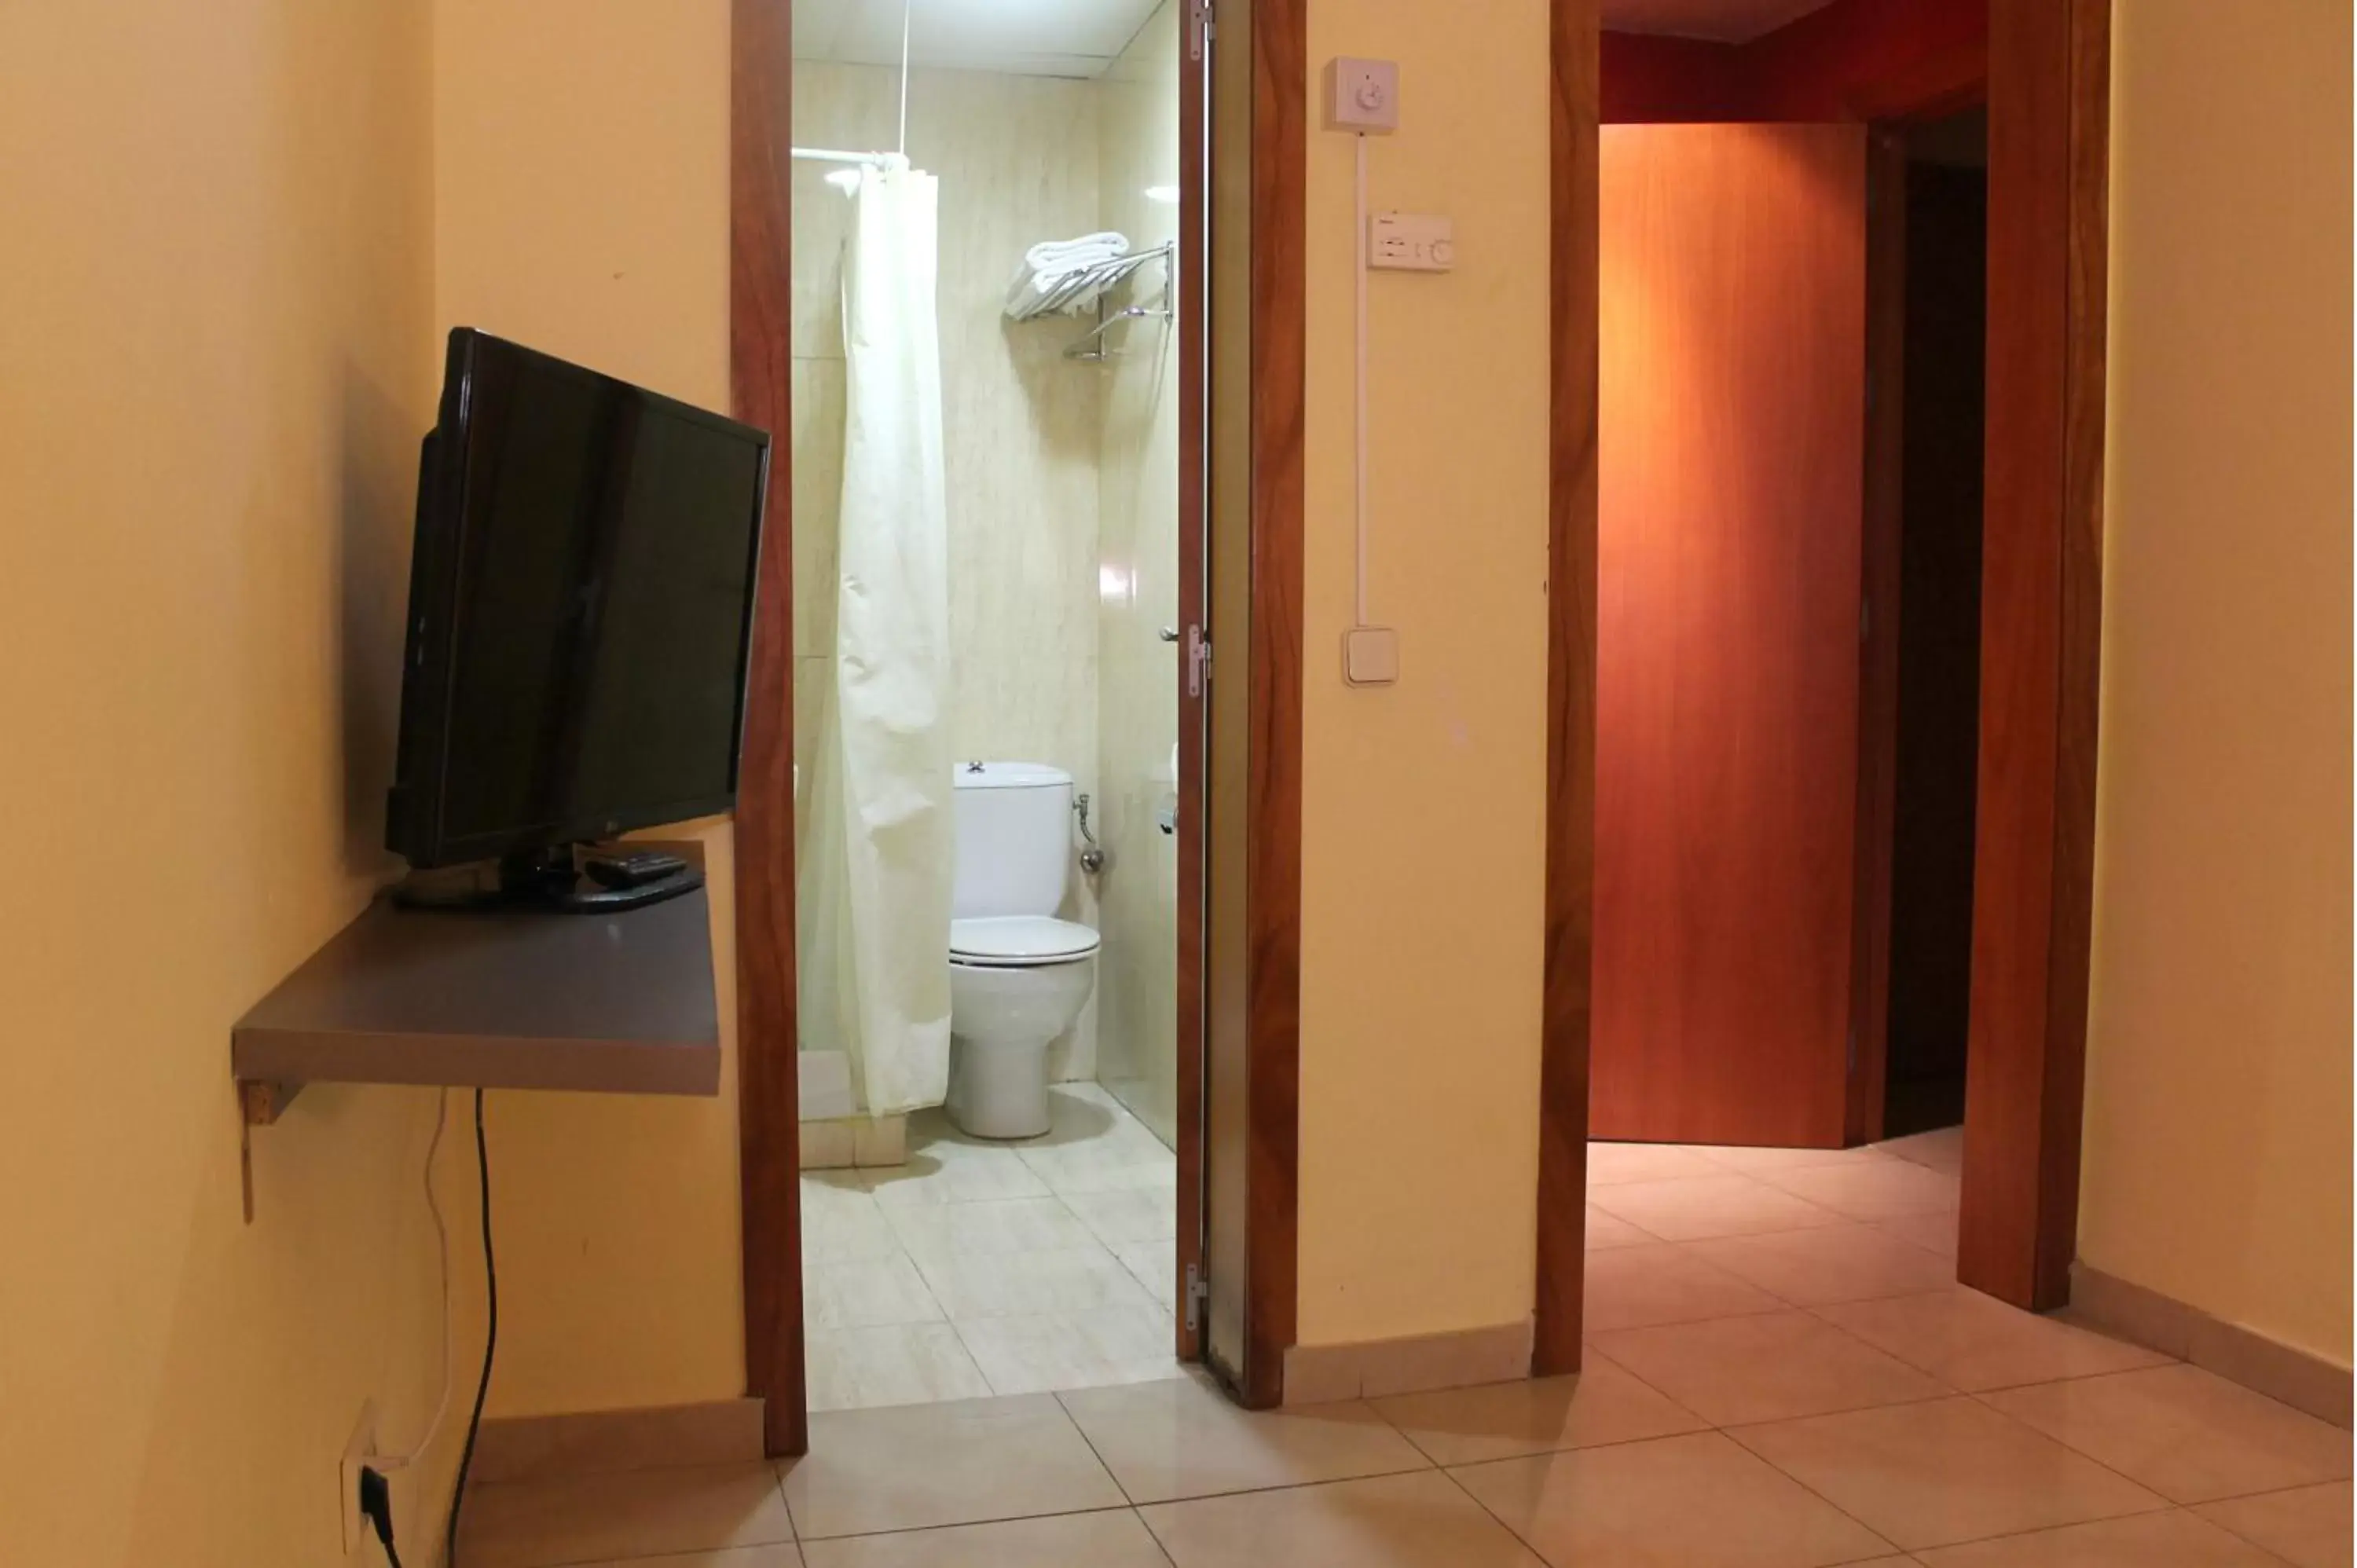 TV and multimedia, Bathroom in Coronado